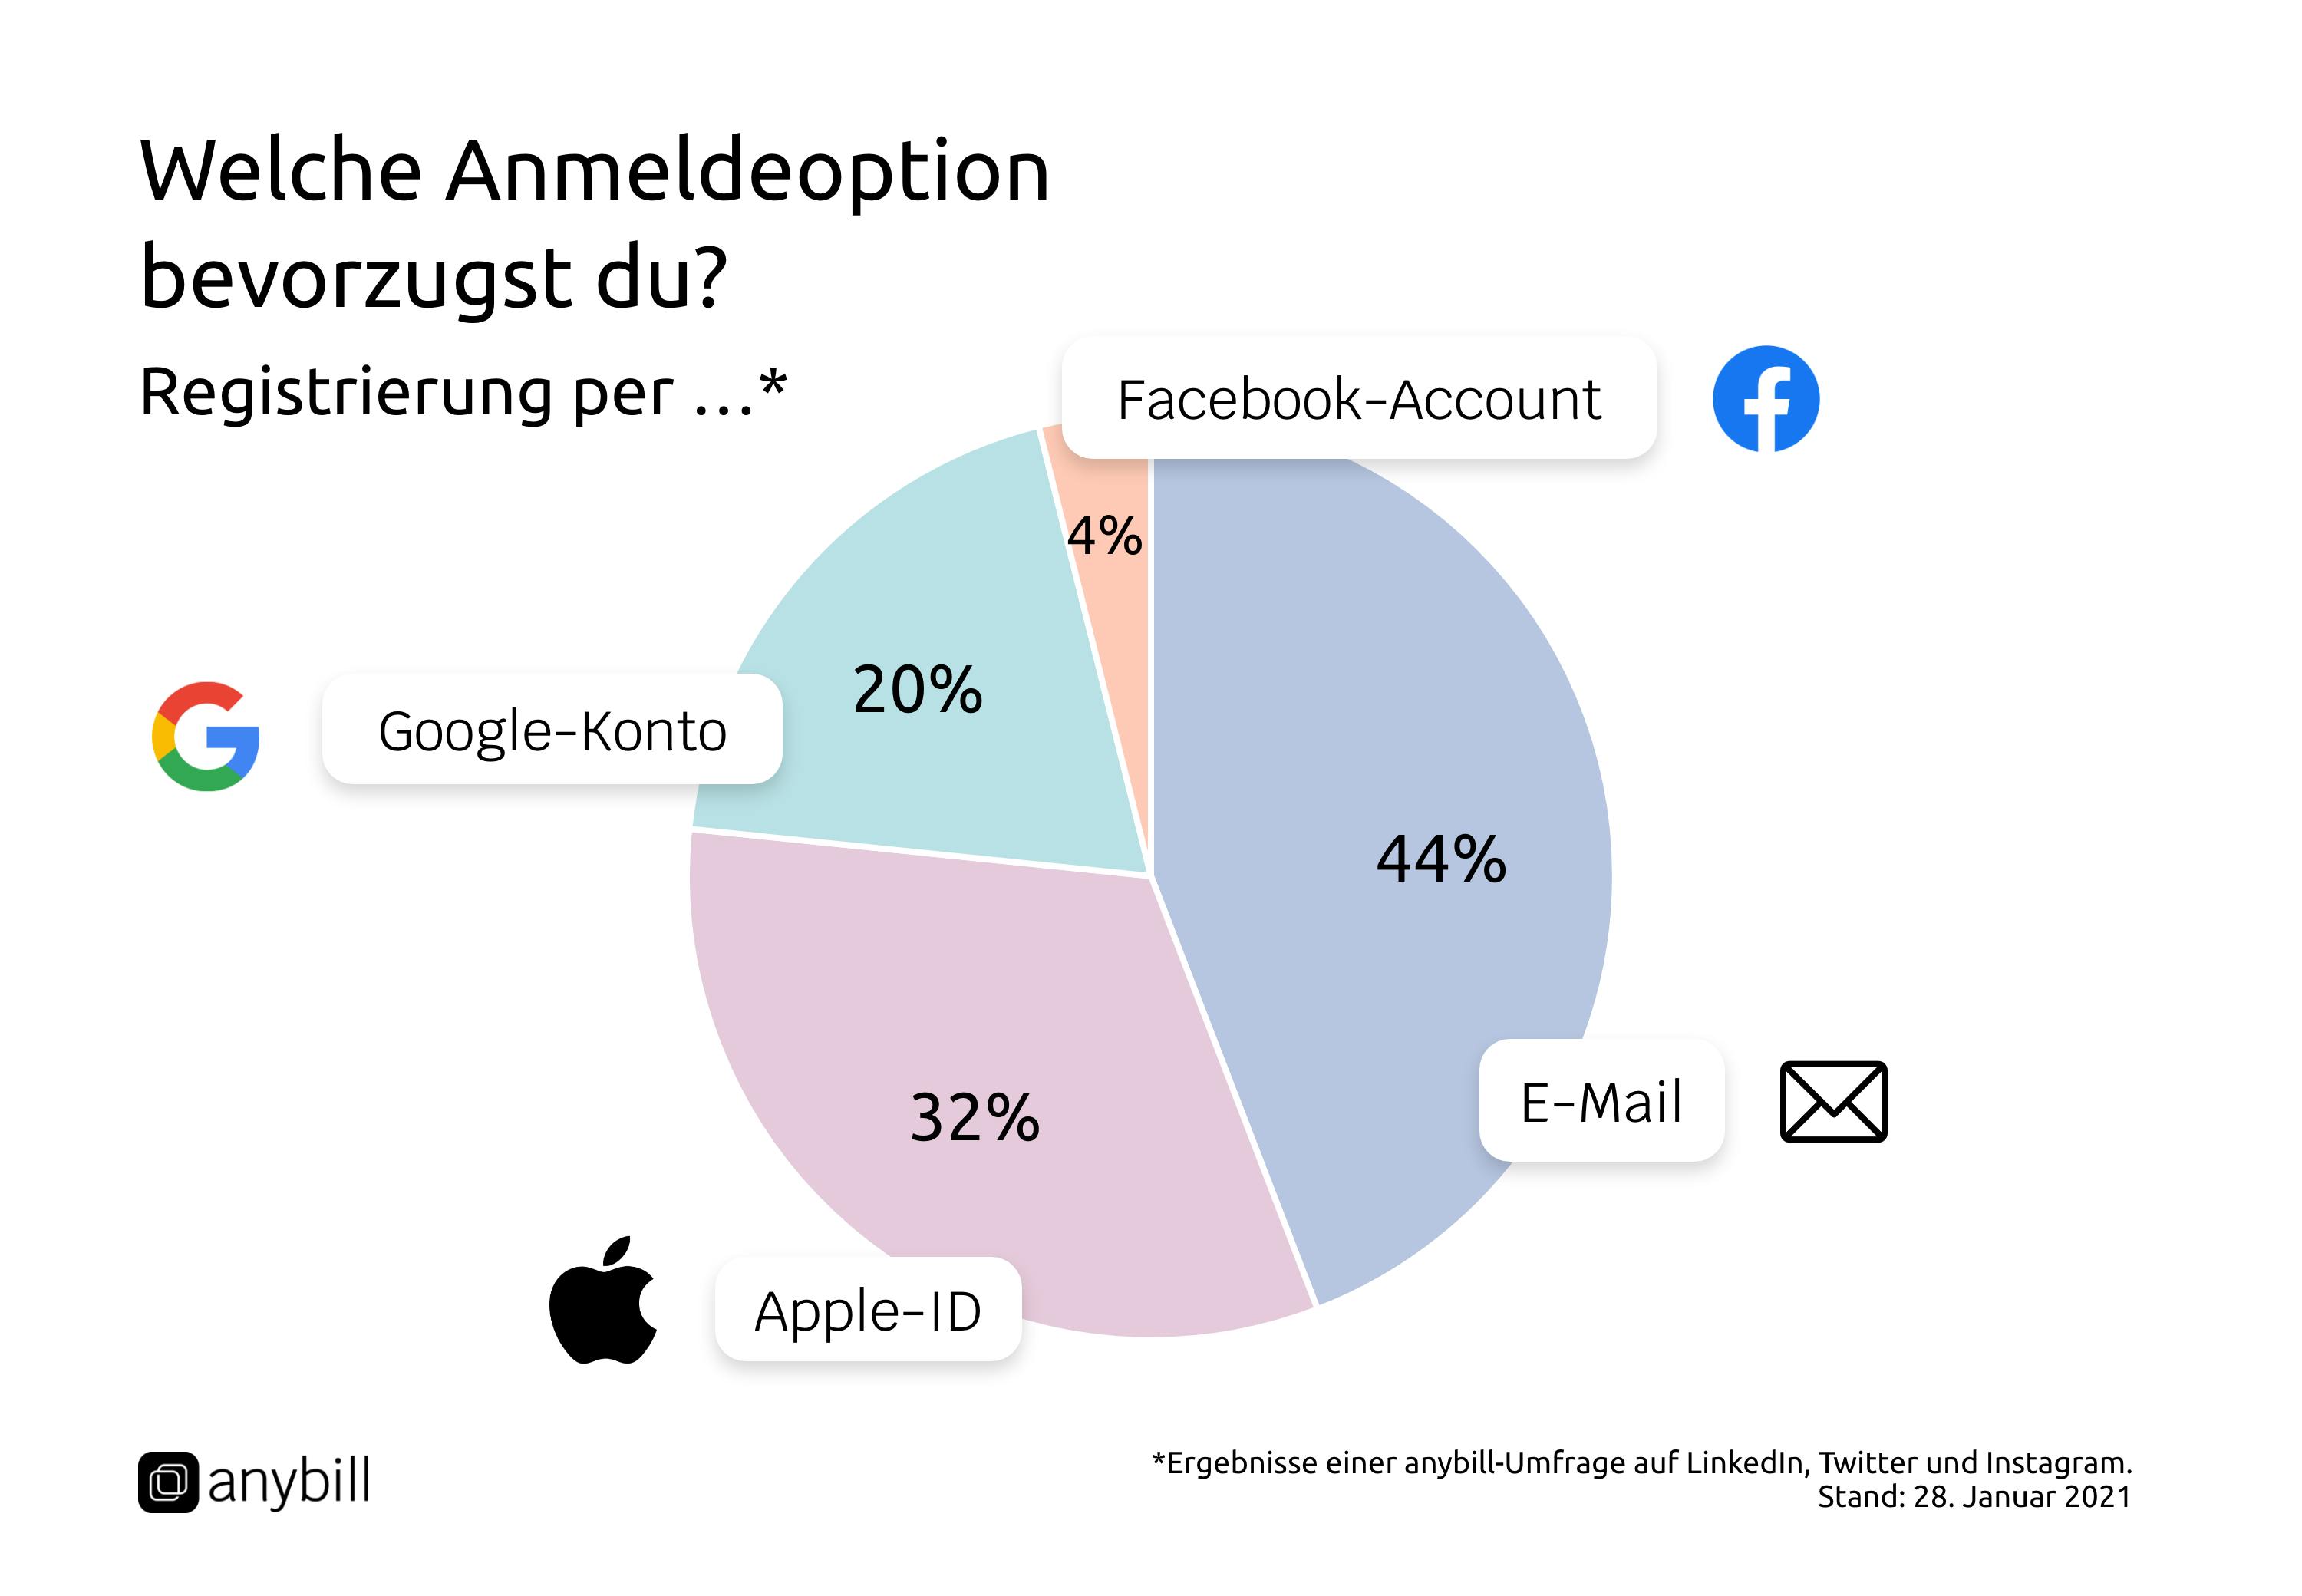 anybill-Umfrage: Welche Anmeldeoption bevorzugst du? 44% E-Mail, 32% Apple-ID, 20% Google-Konto, 4% Facebook-Account.